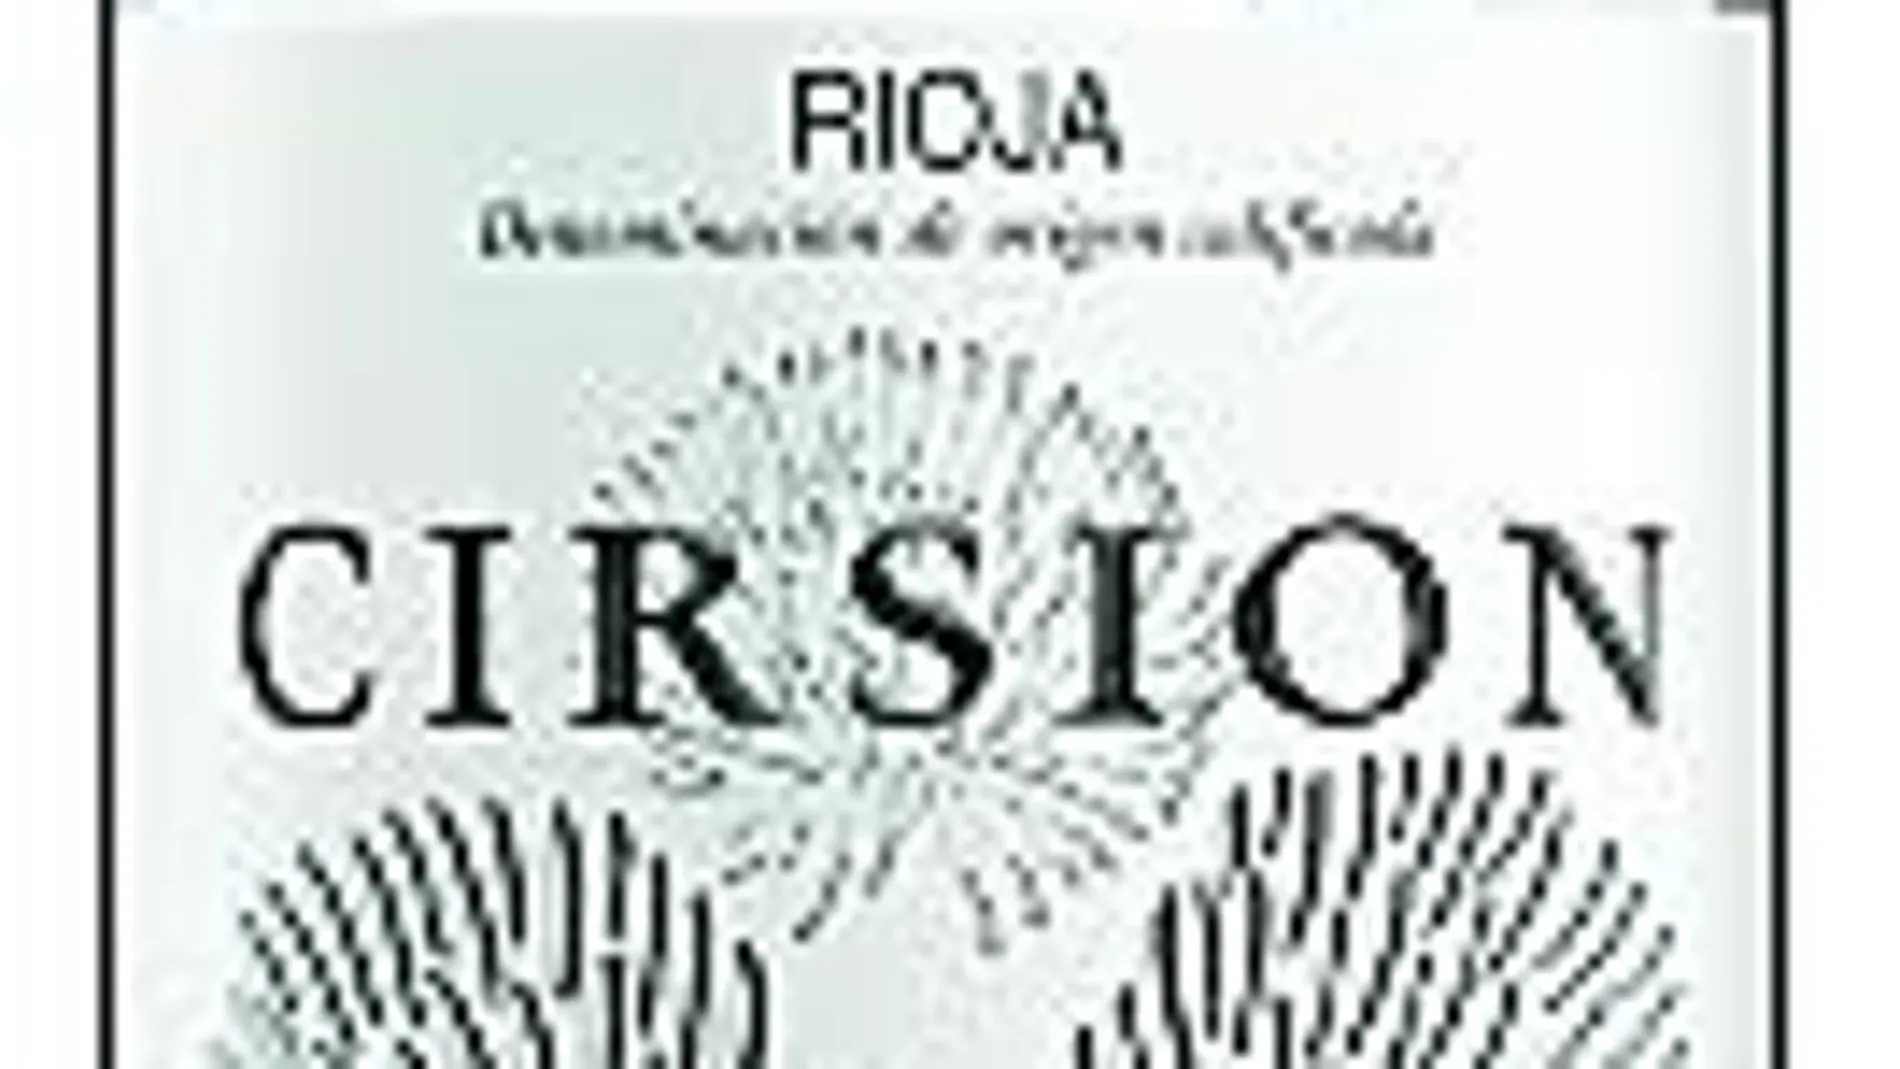 Los mejores vinos de España: Disfrutar Cirsion